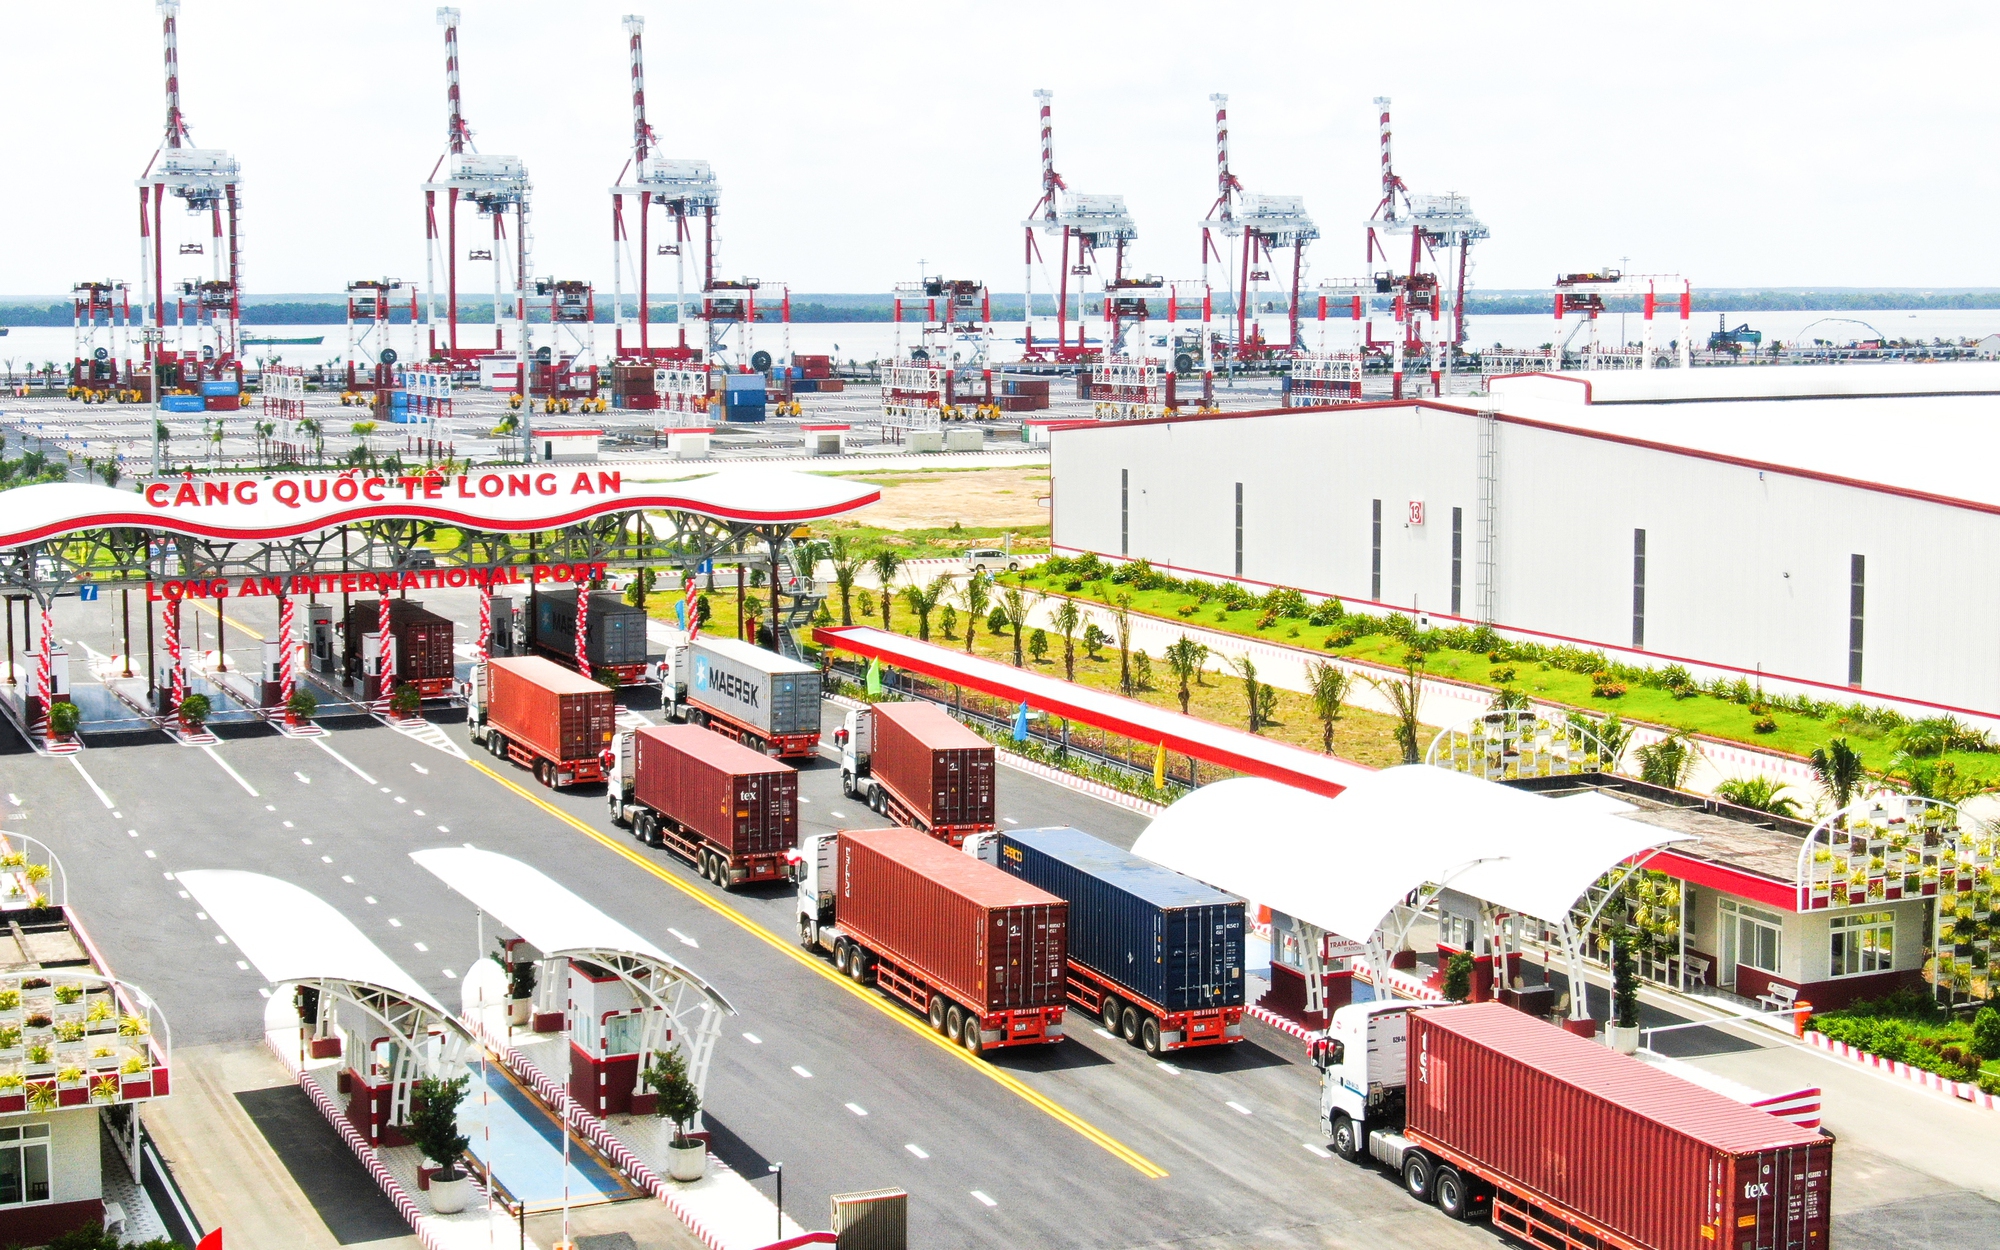 Cảng quốc tế Long An nhận bằng khen trong việc phát triển dịch vụ logistics Việt Nam 2023